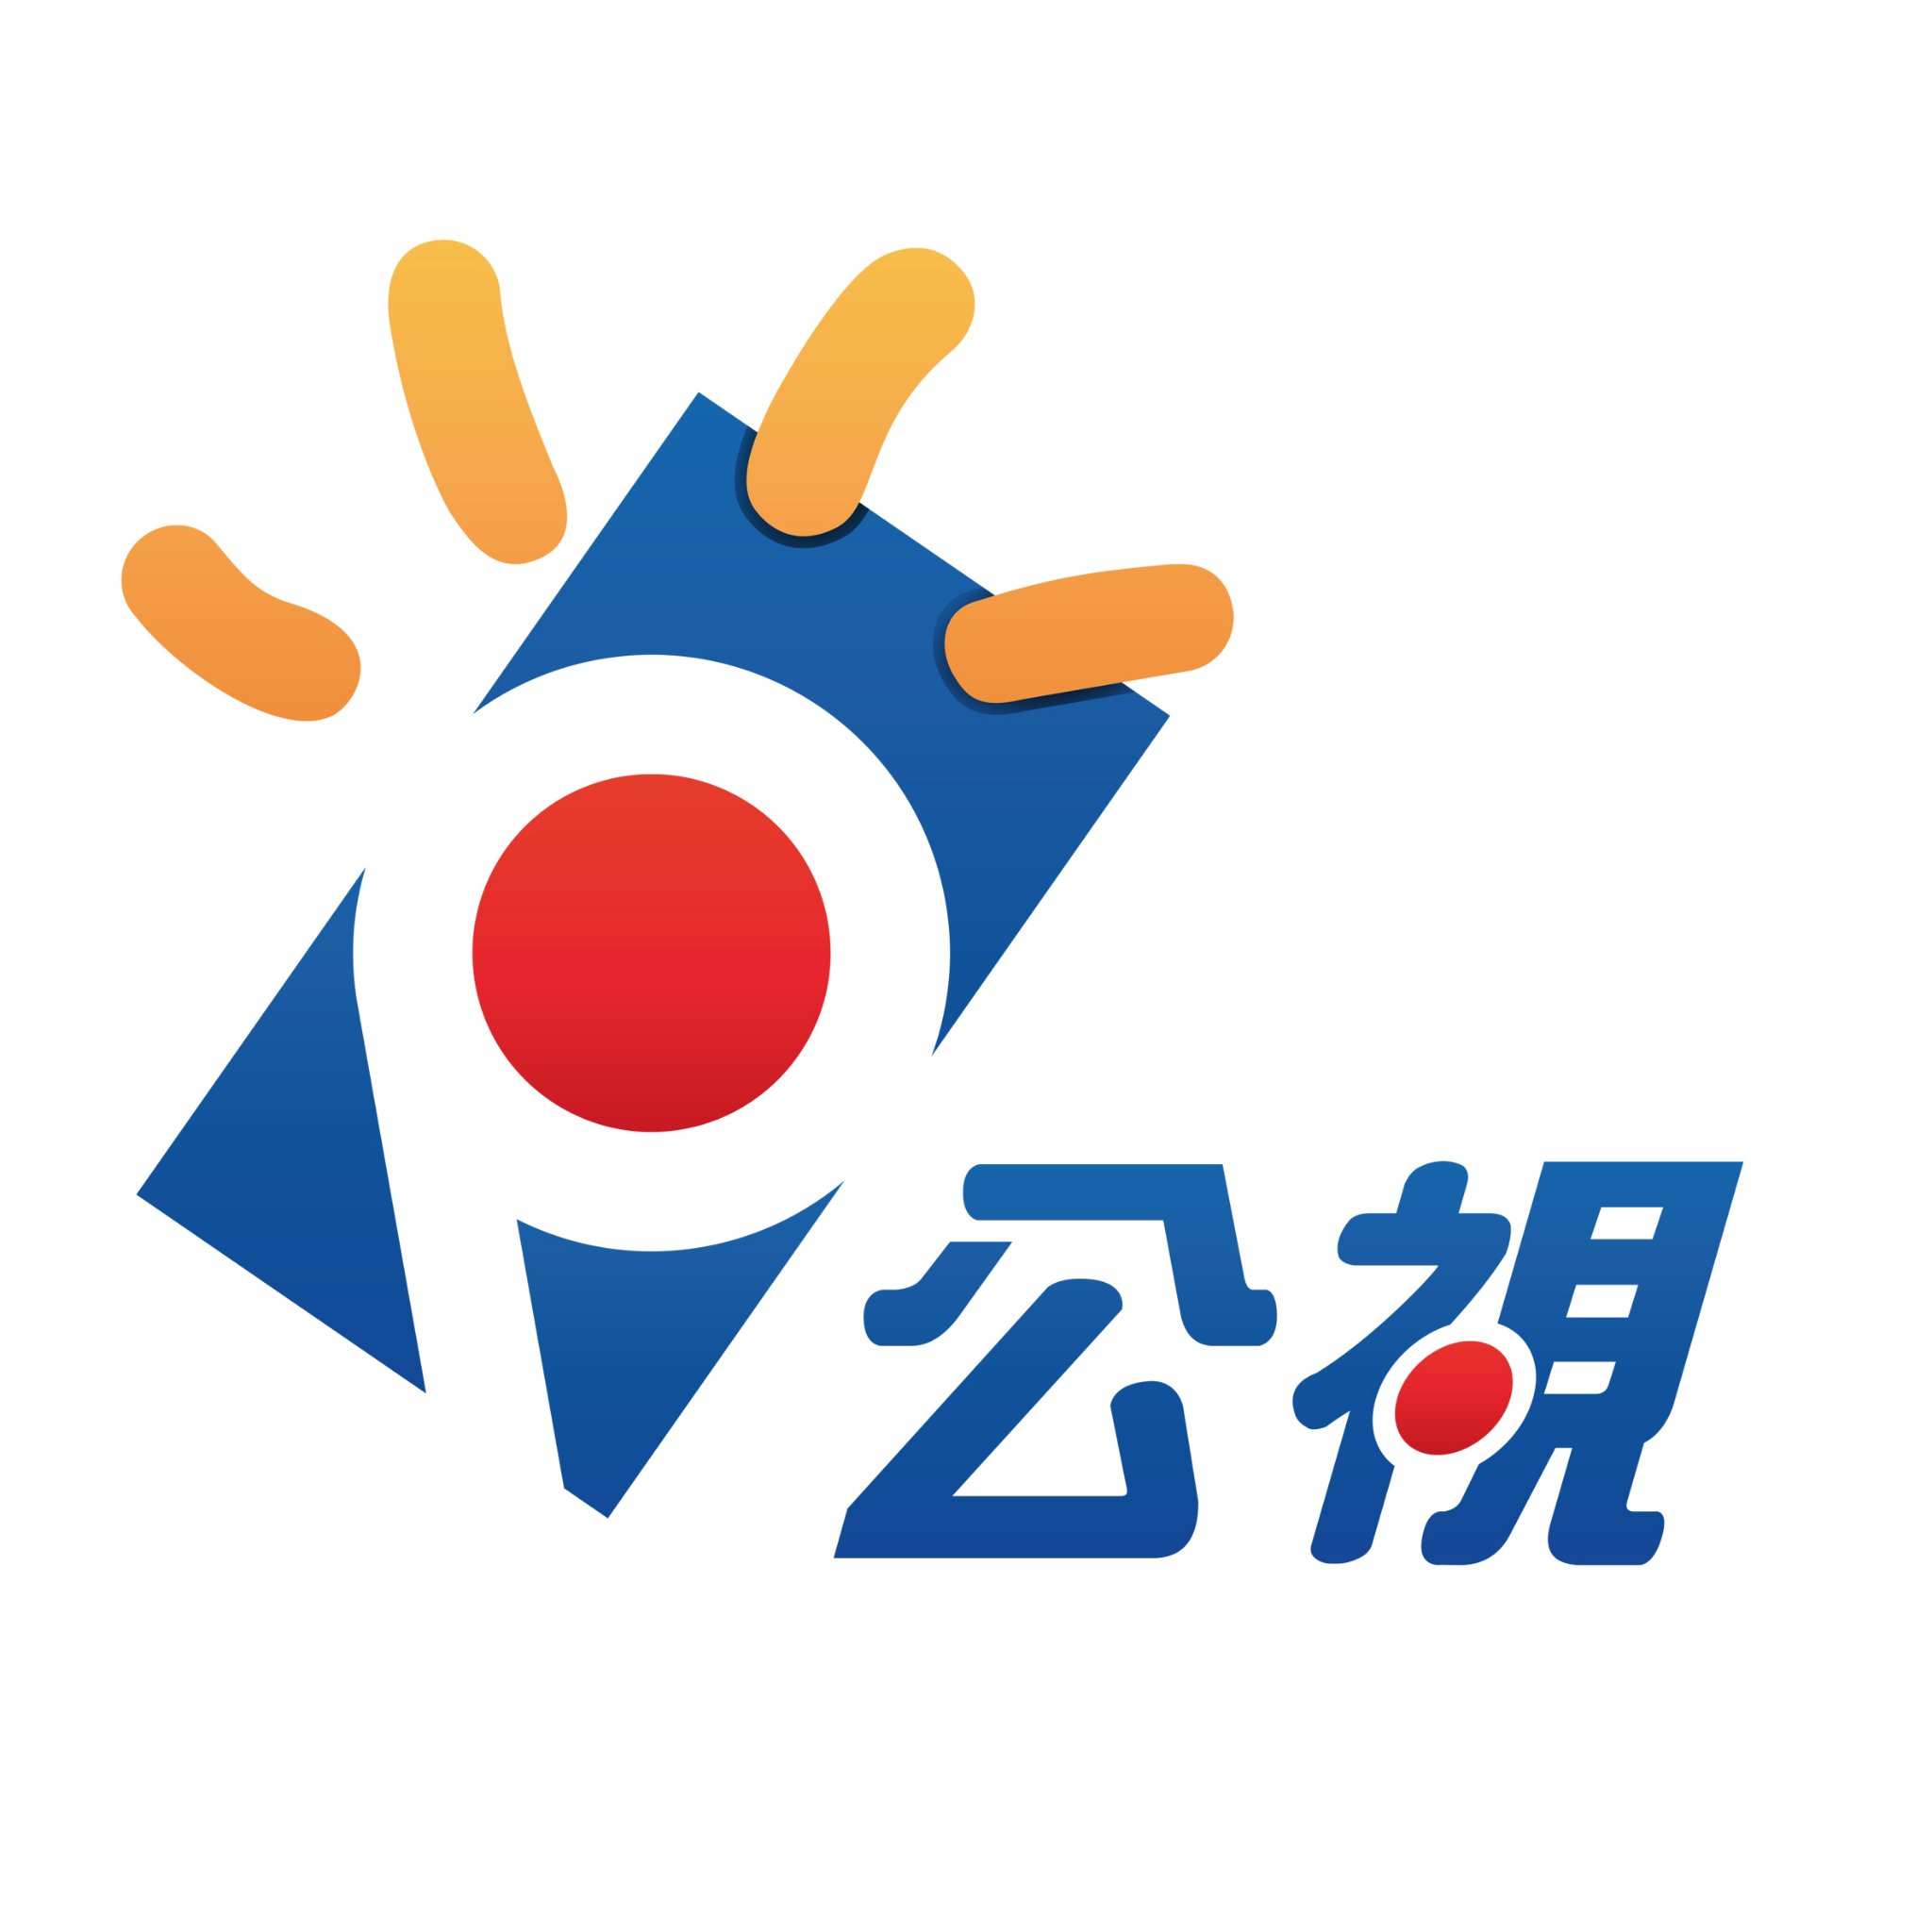 公視(台灣公共電視)